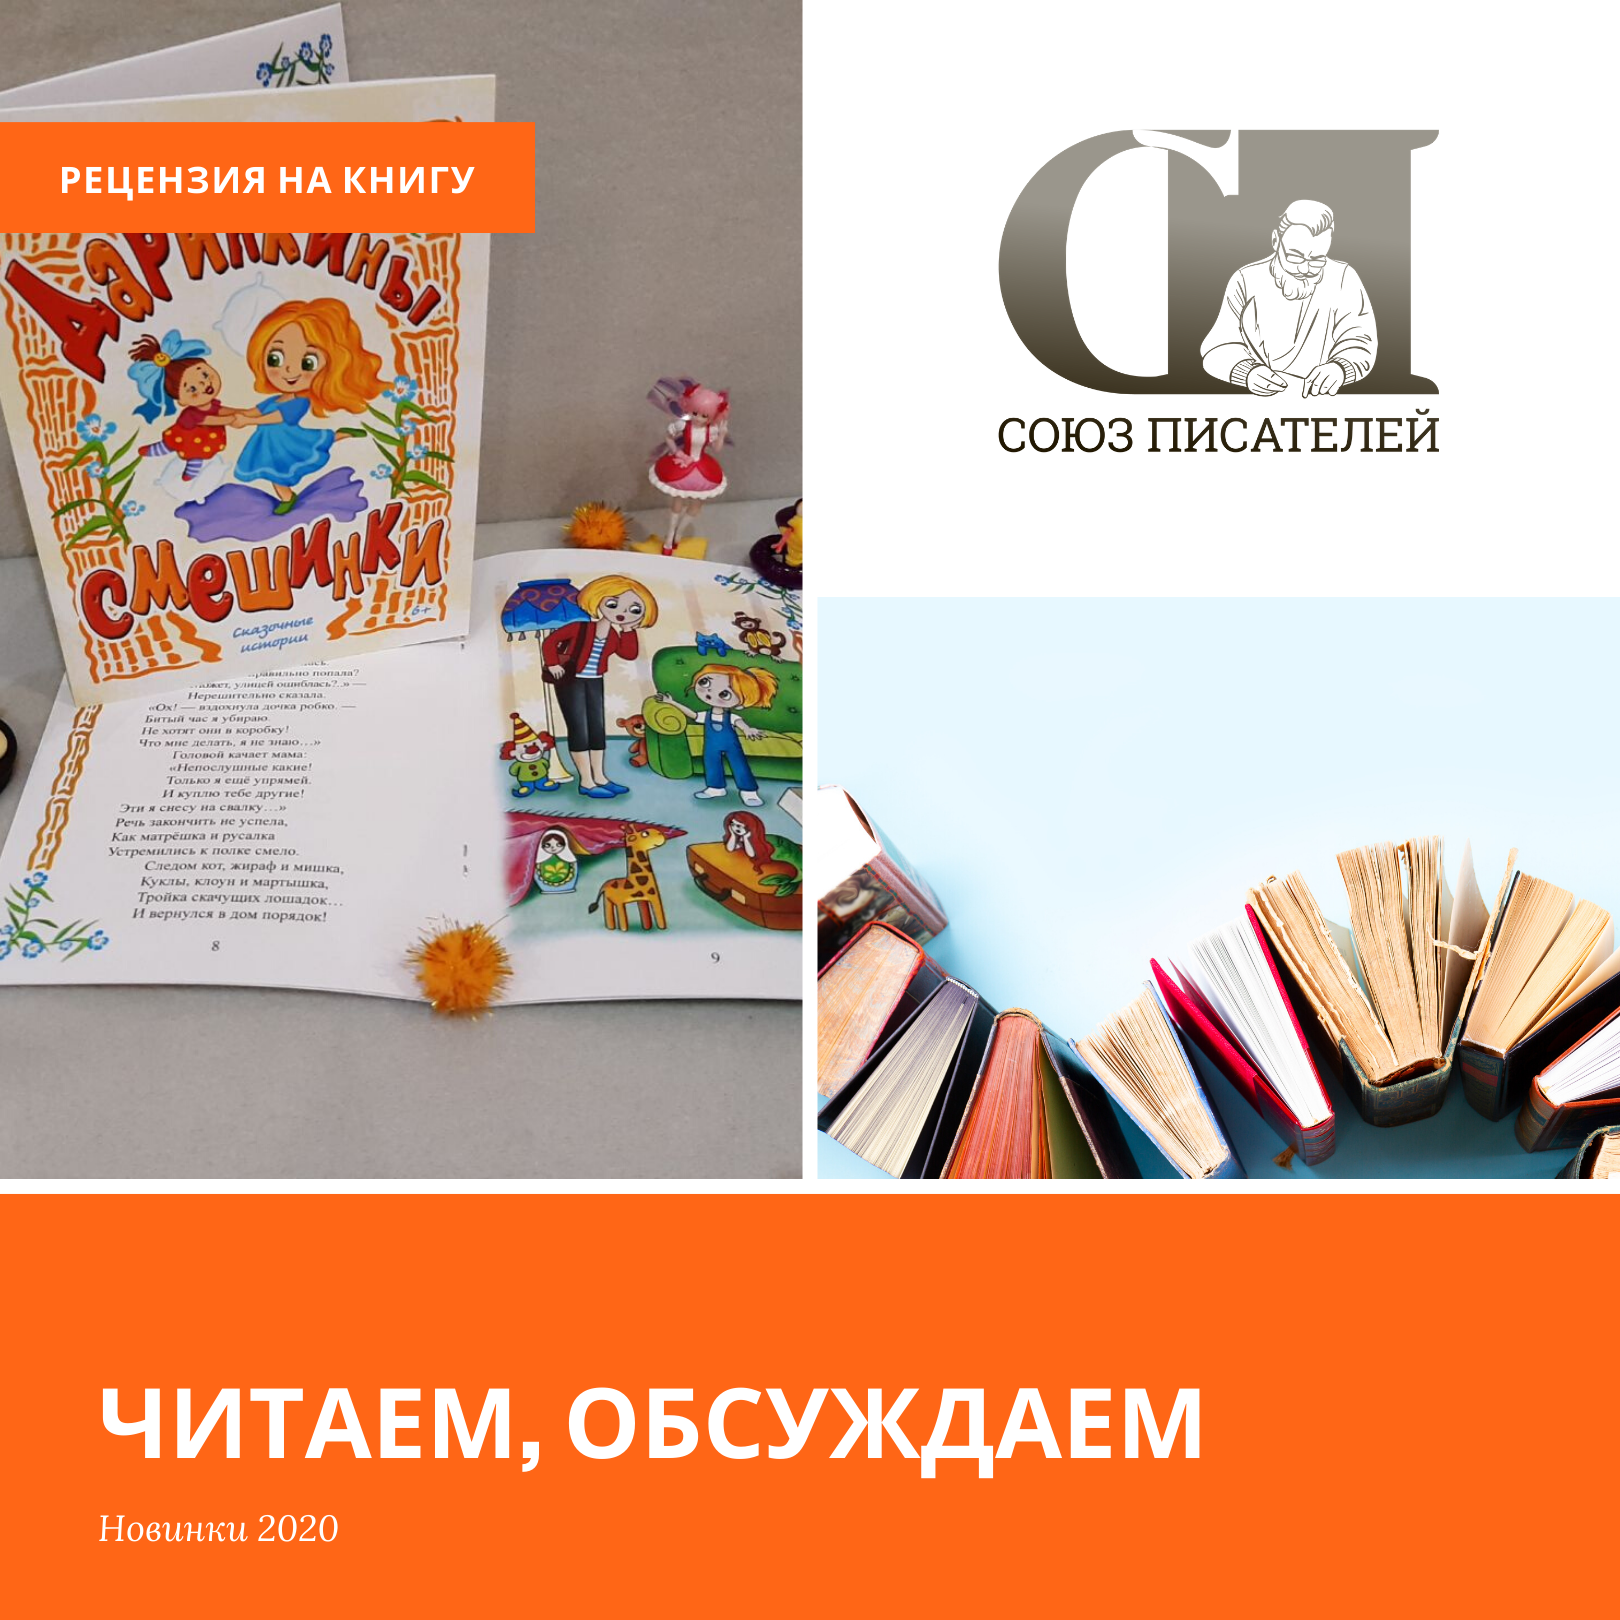 Интересности детского мира в книге Натальи Шараповой